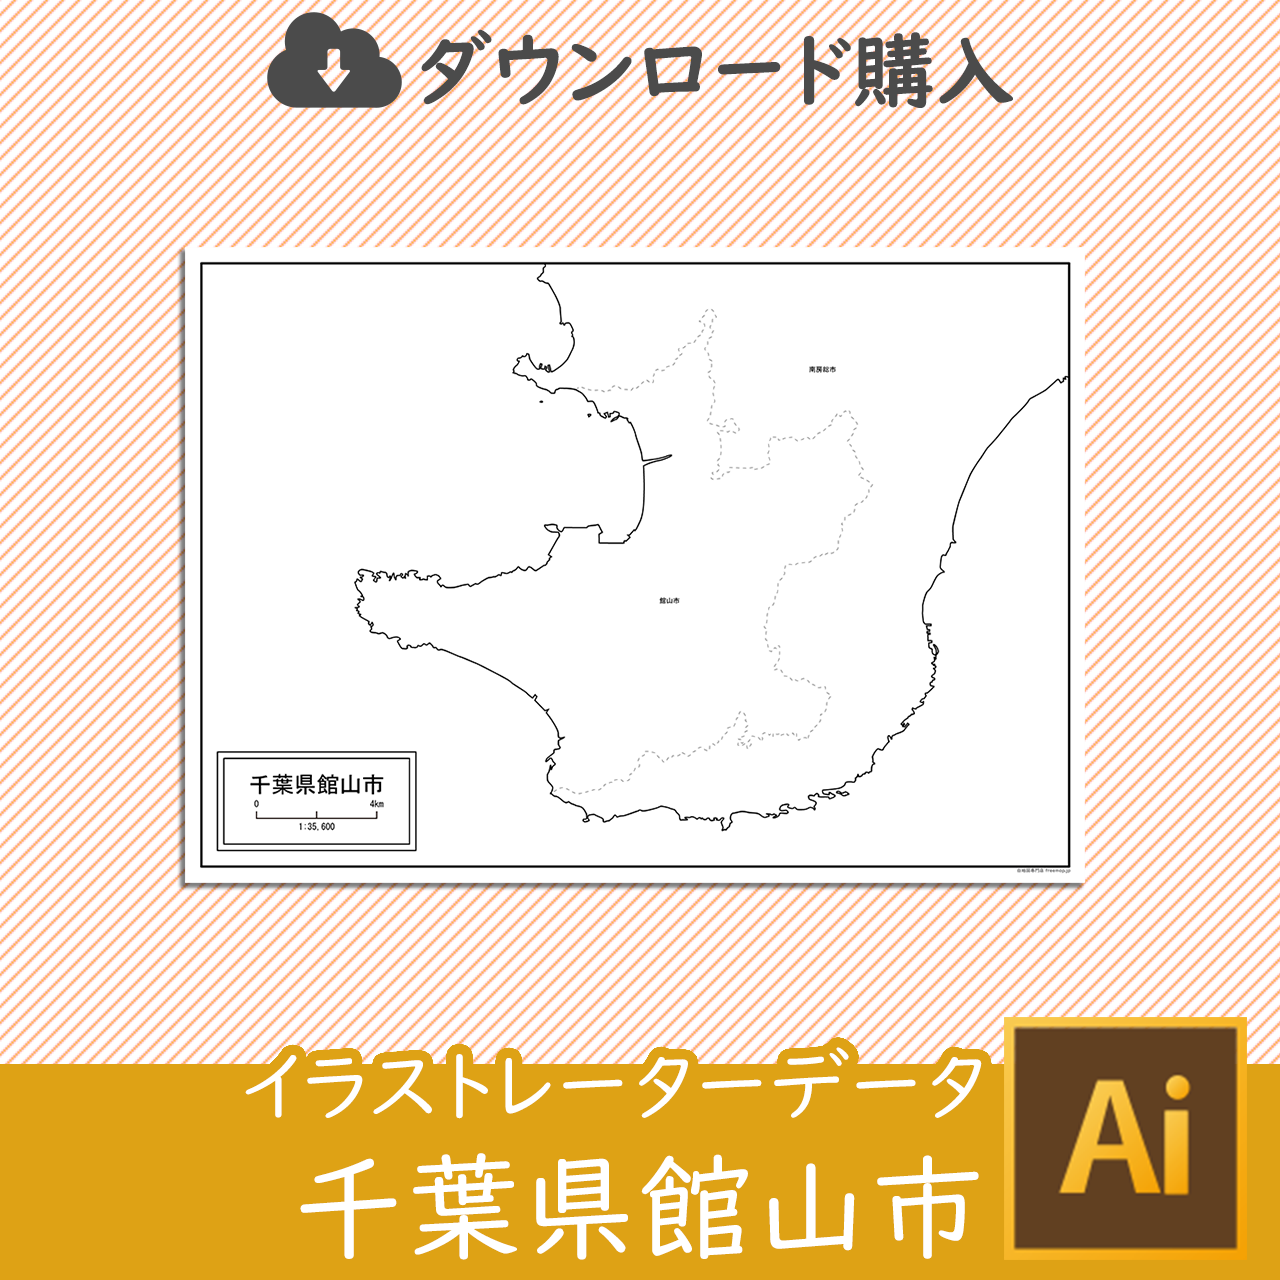 館山市のaiデータのサムネイル画像